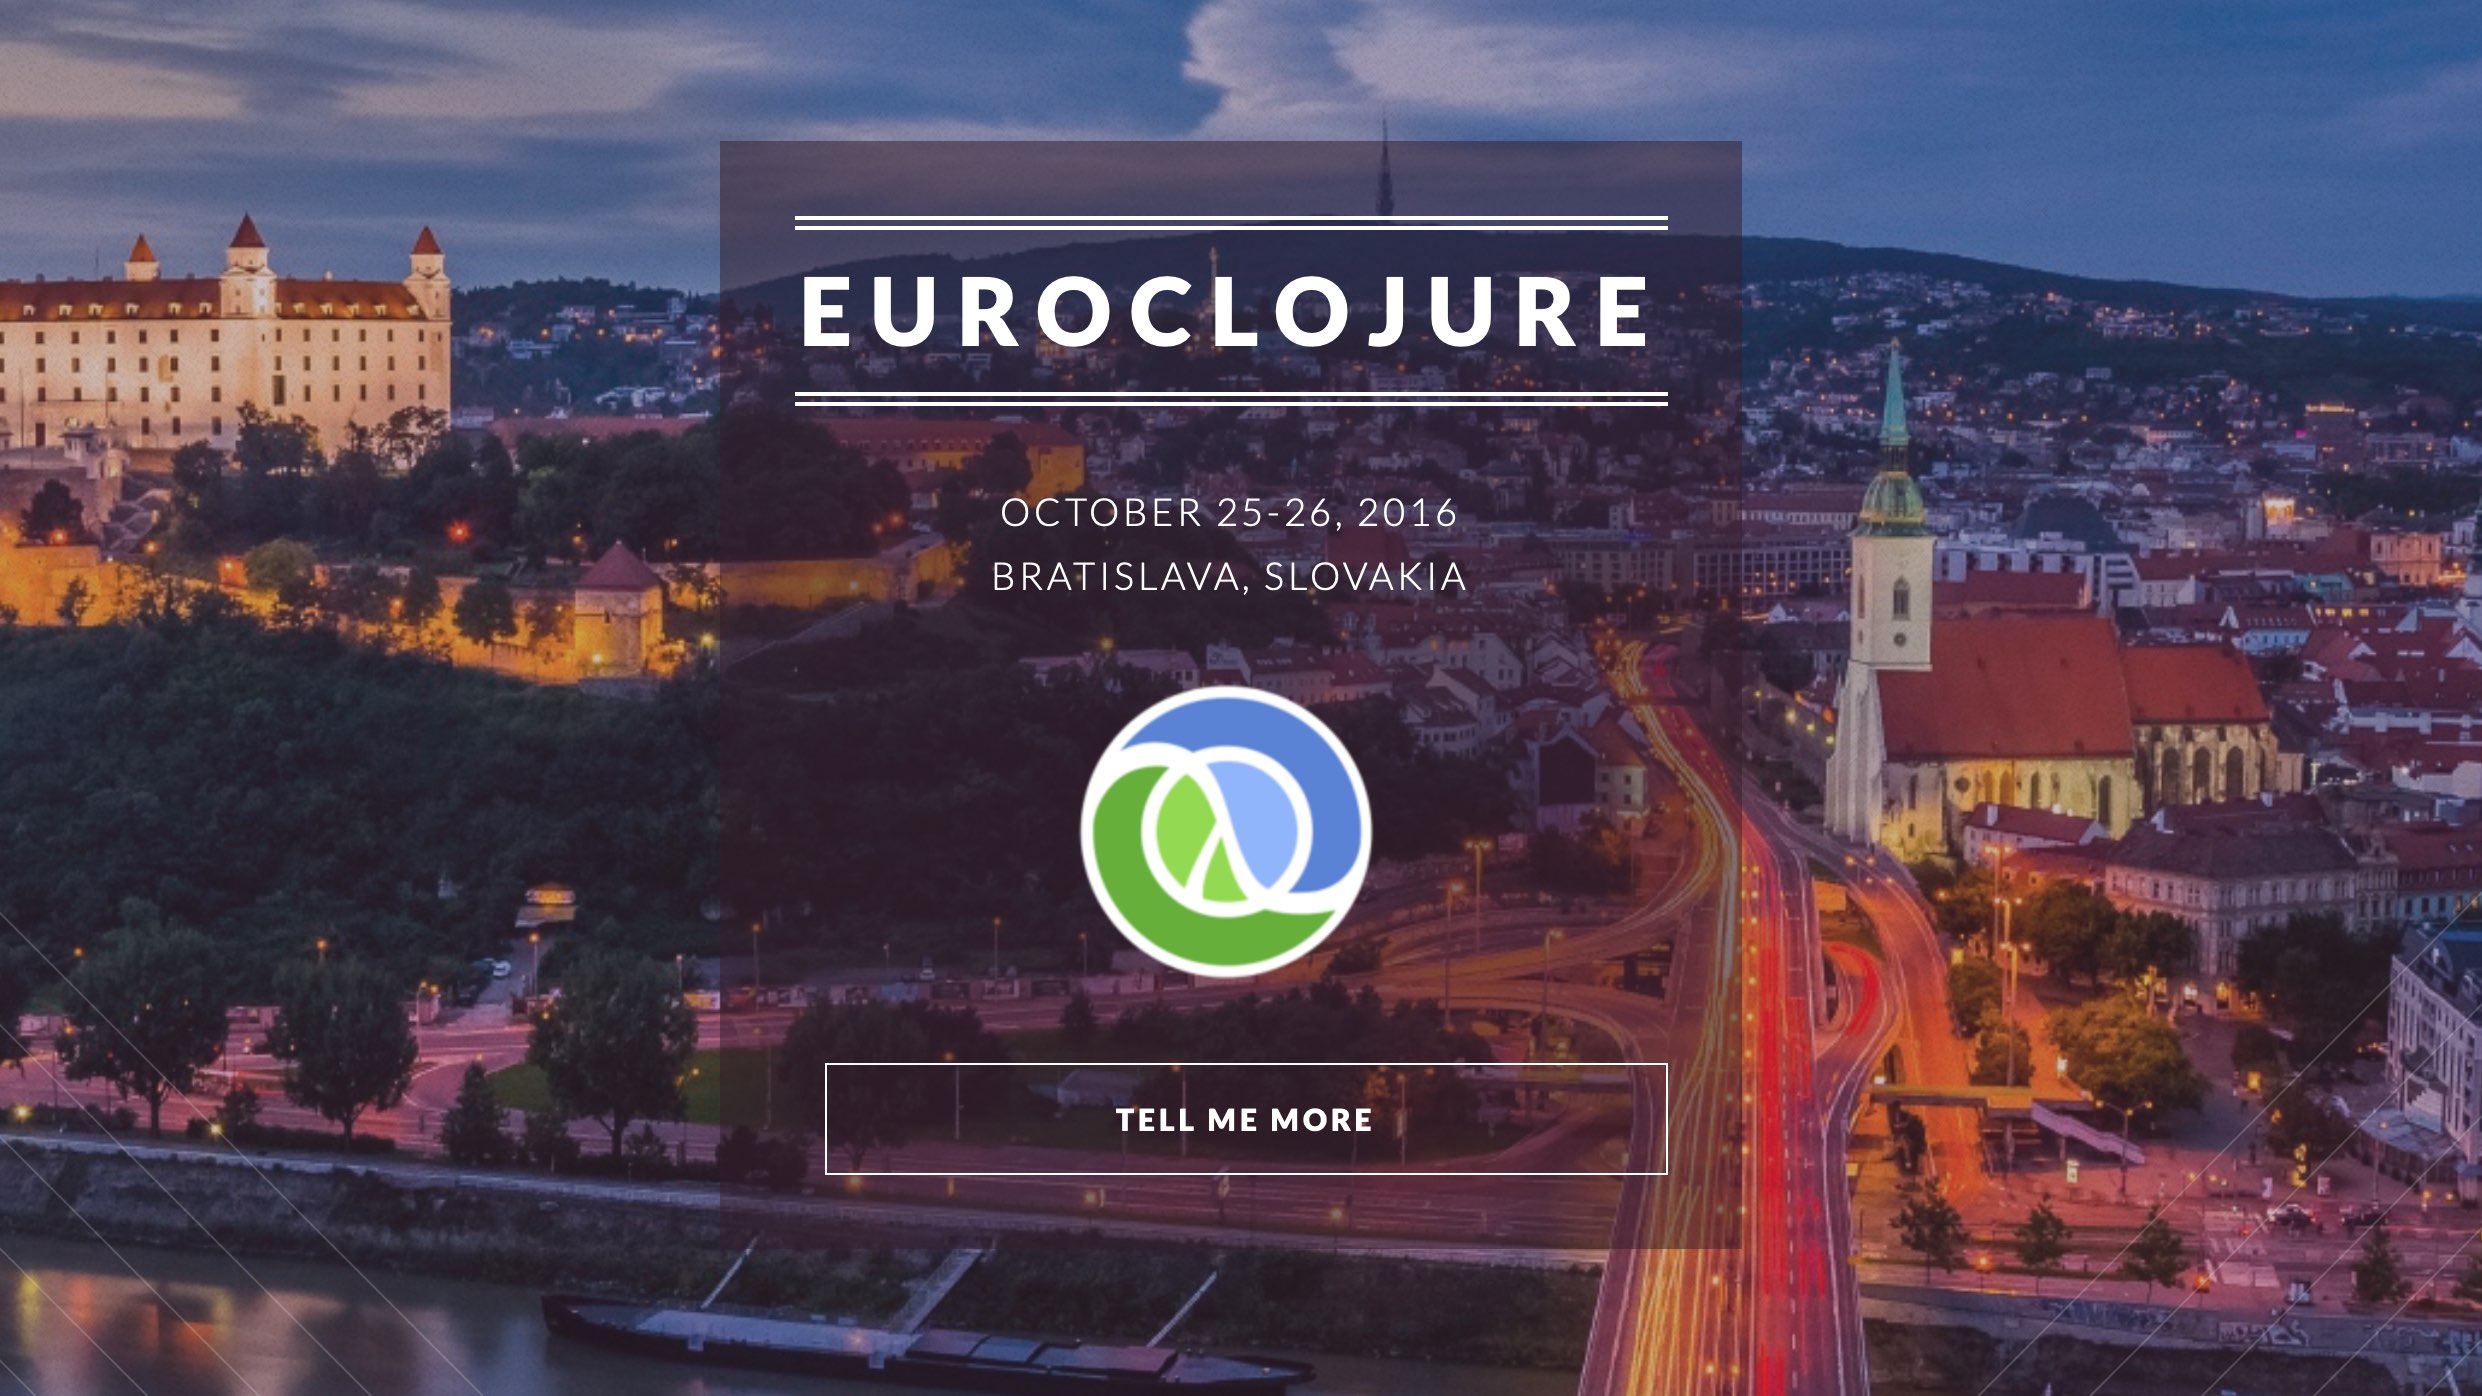 Eindrücke von der EuroClojure 2016